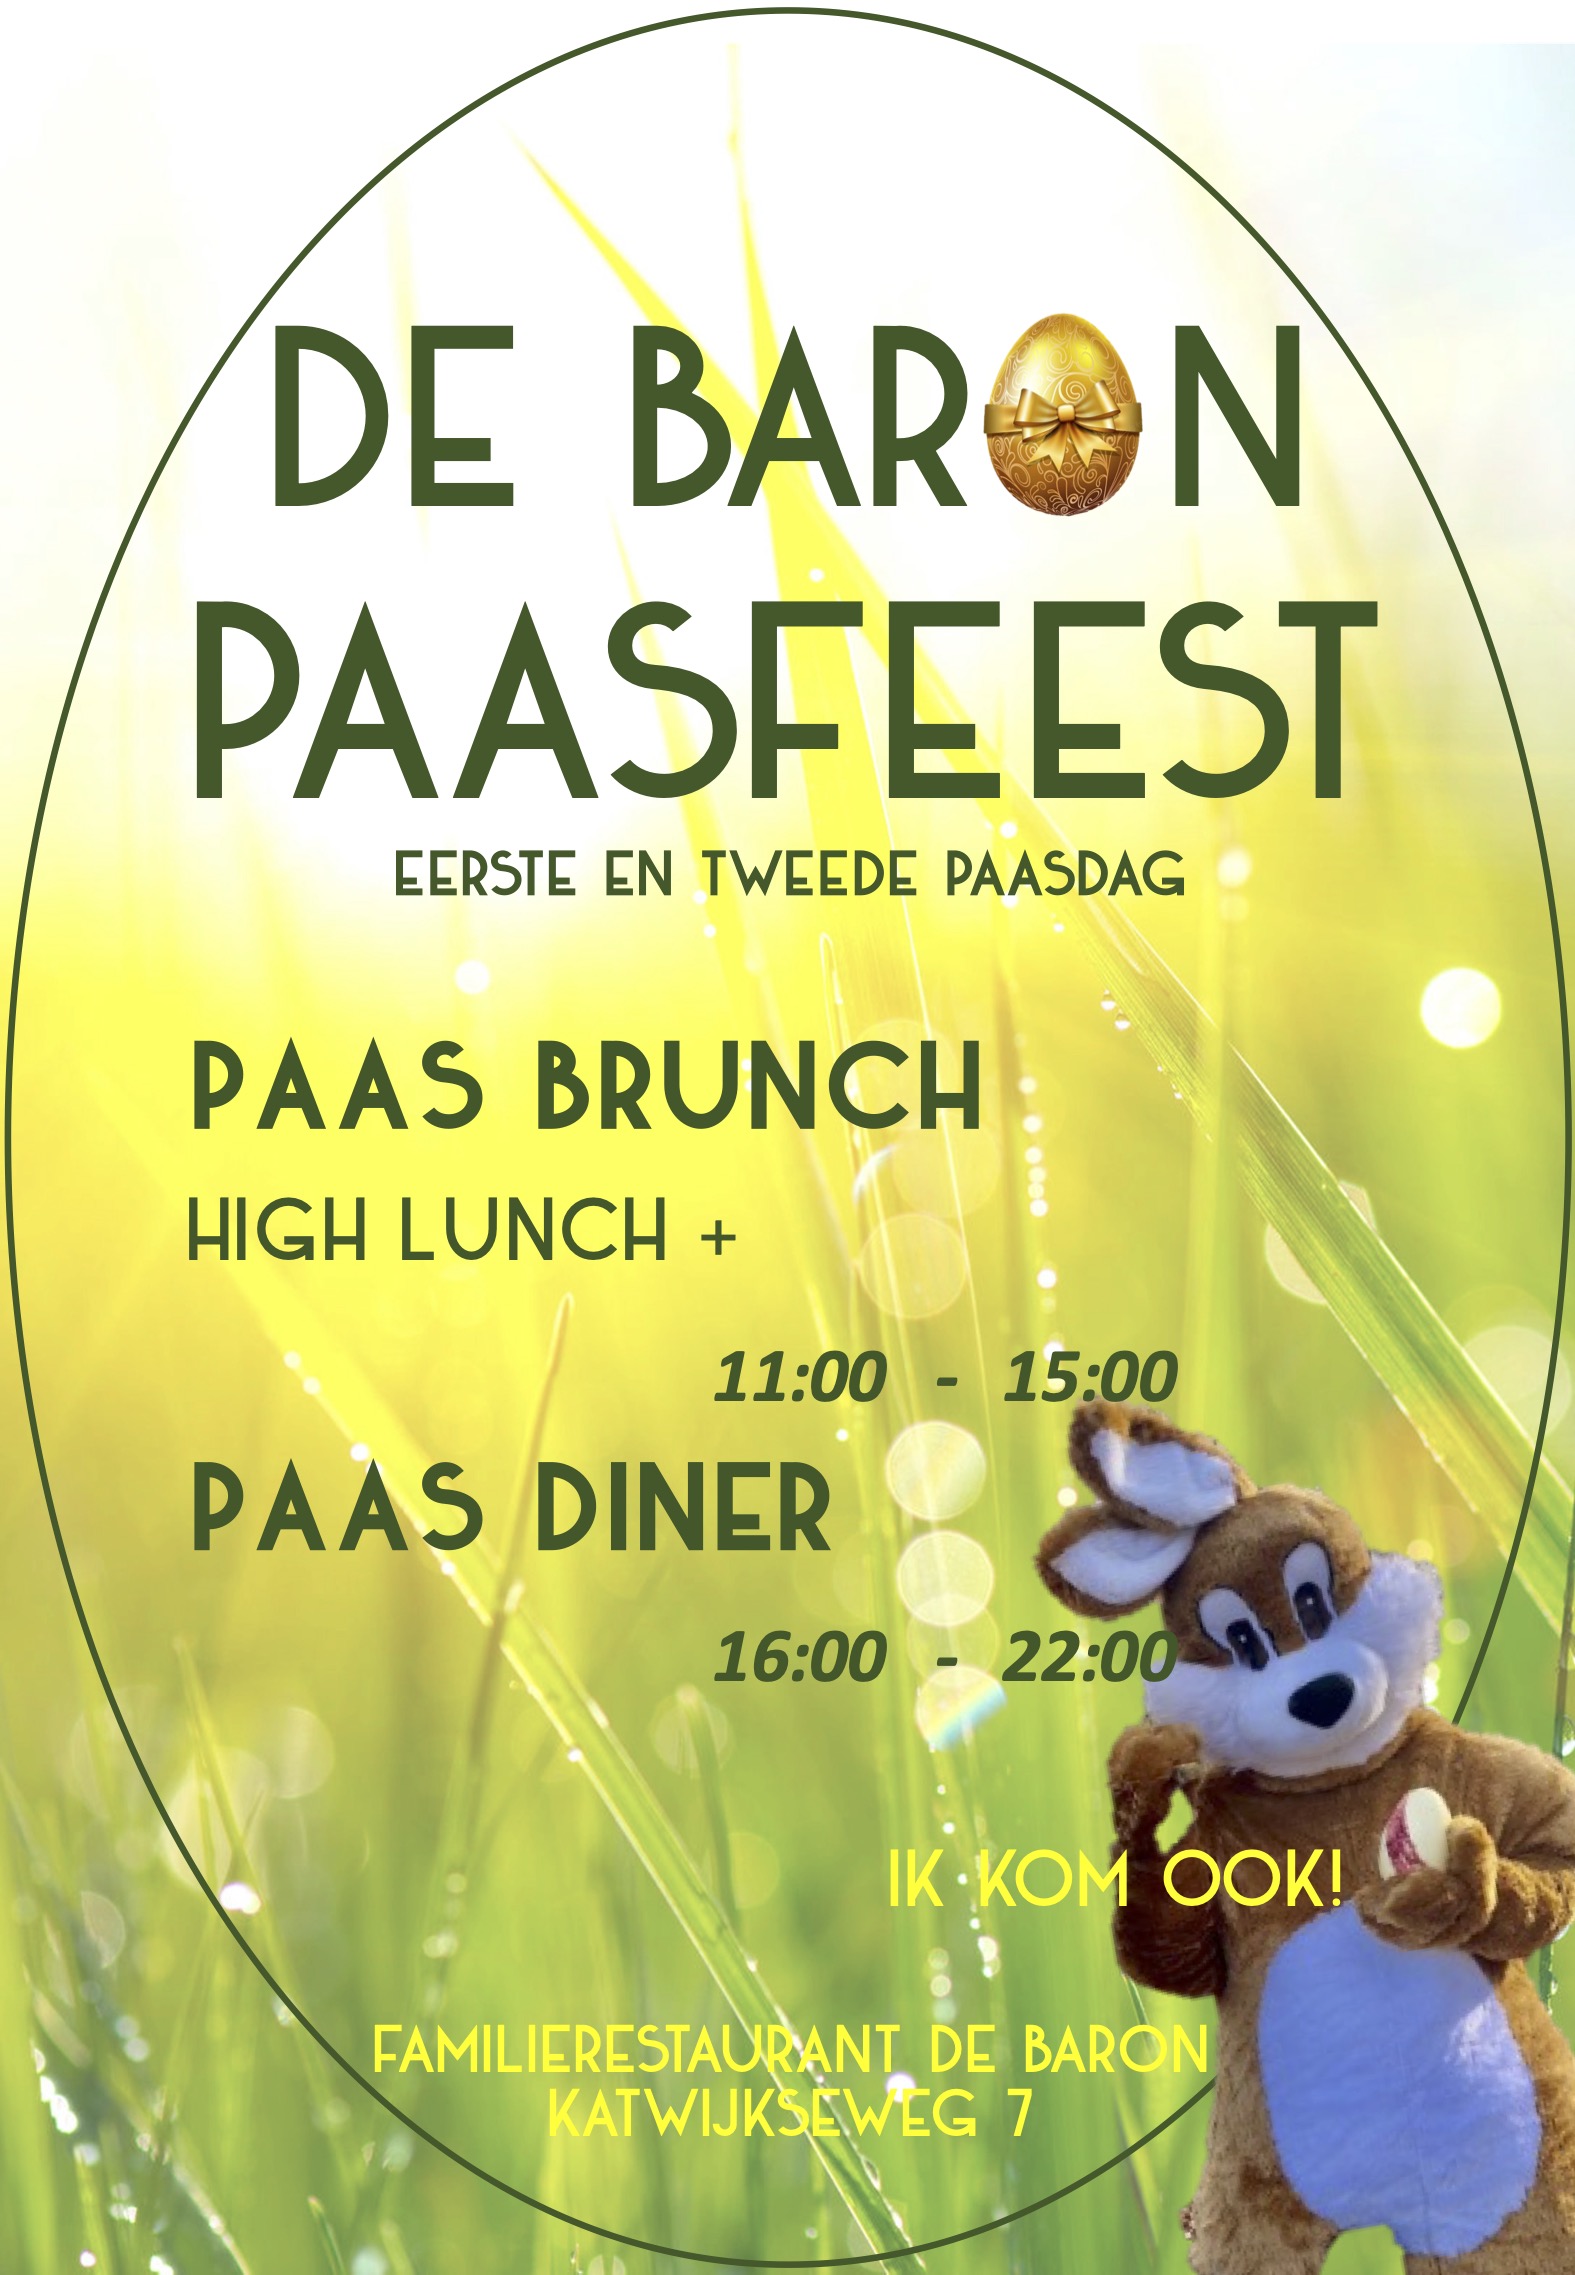 PaasLunch 2023 Restaurant DE Baron Wassenaar